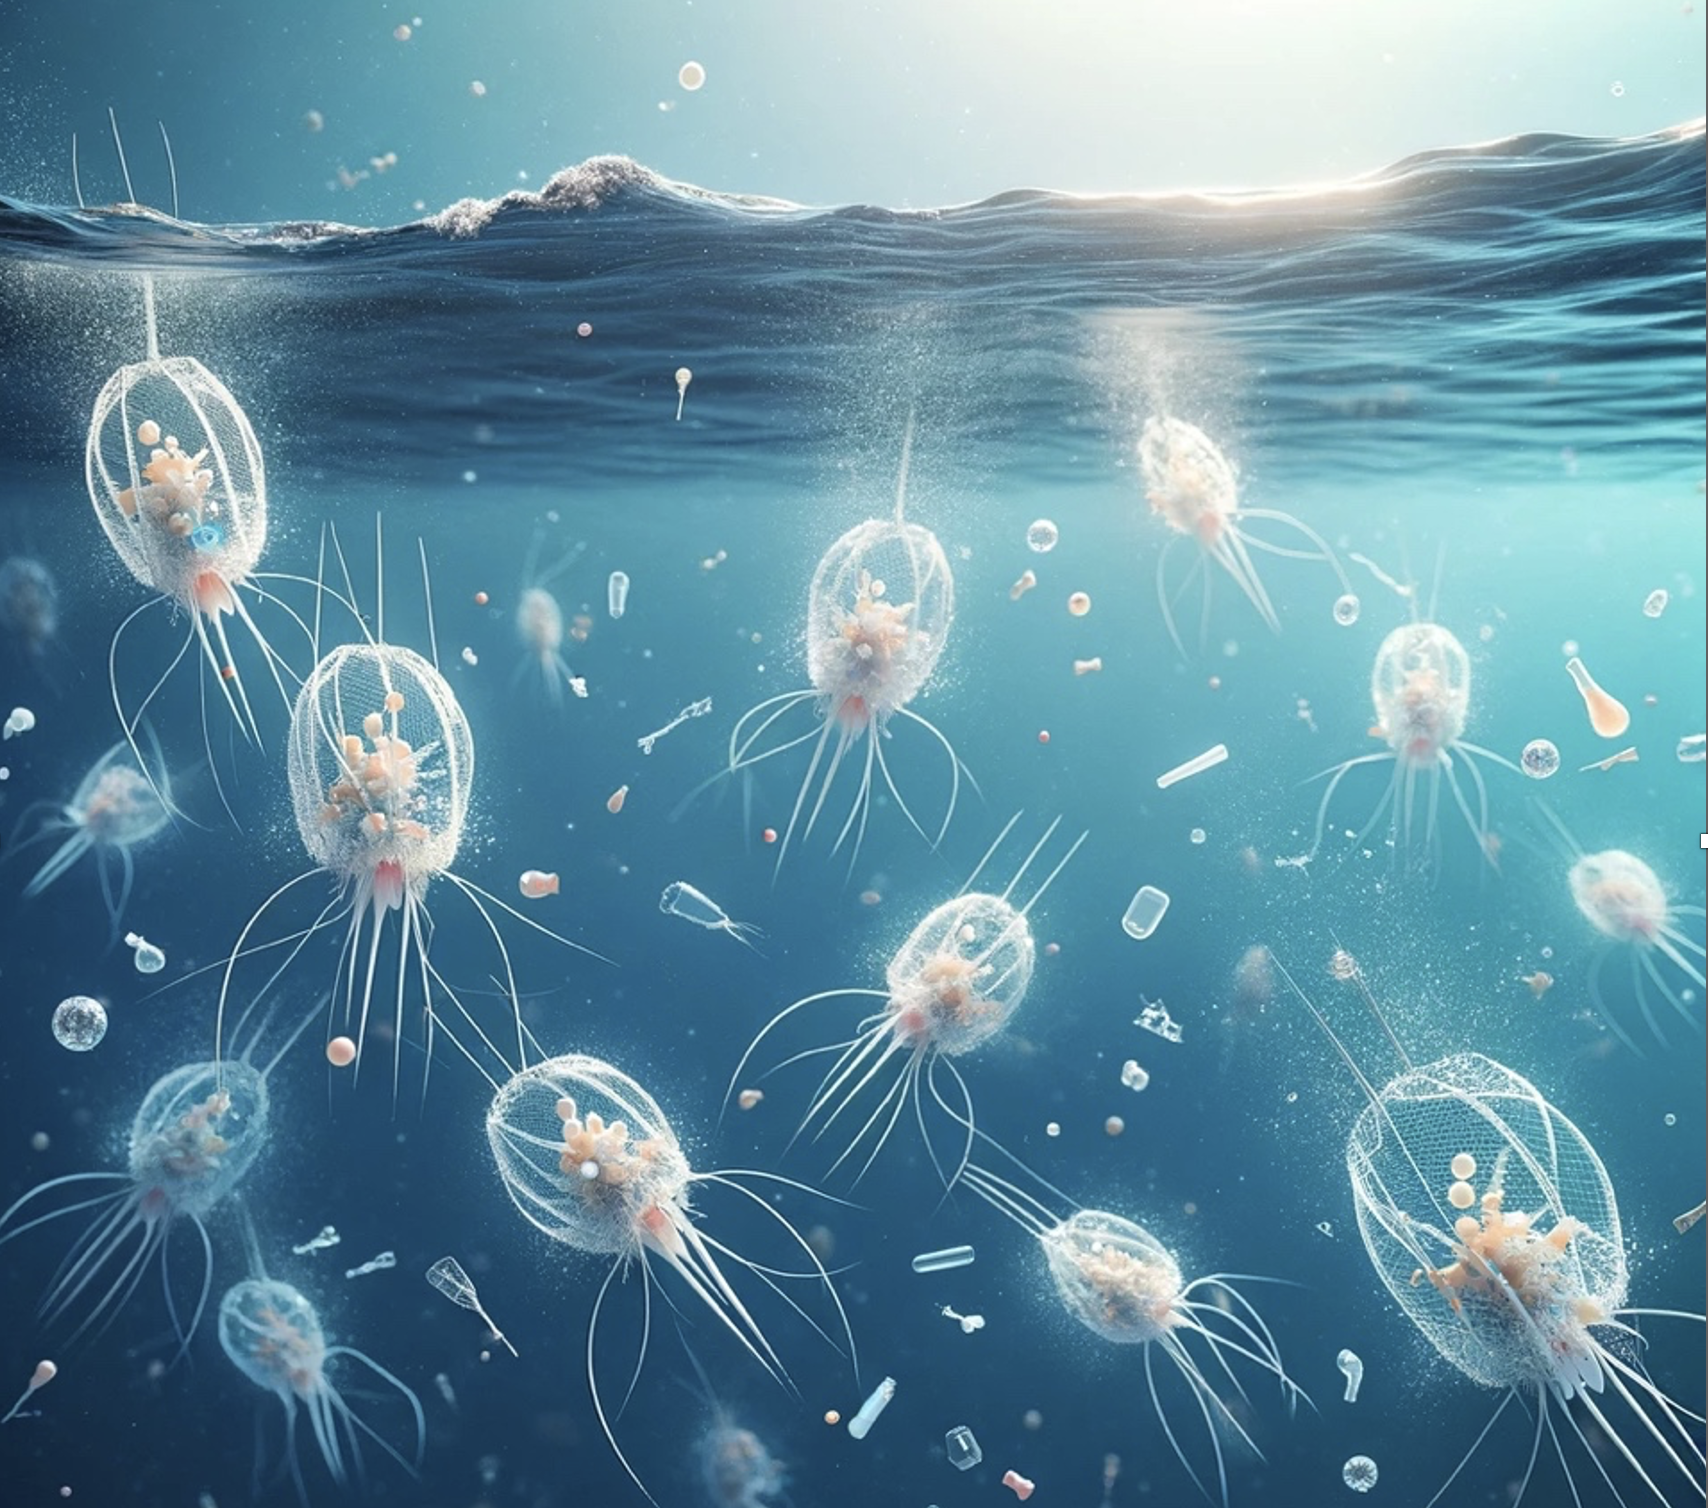 Le plancton absorbe le plastique ?